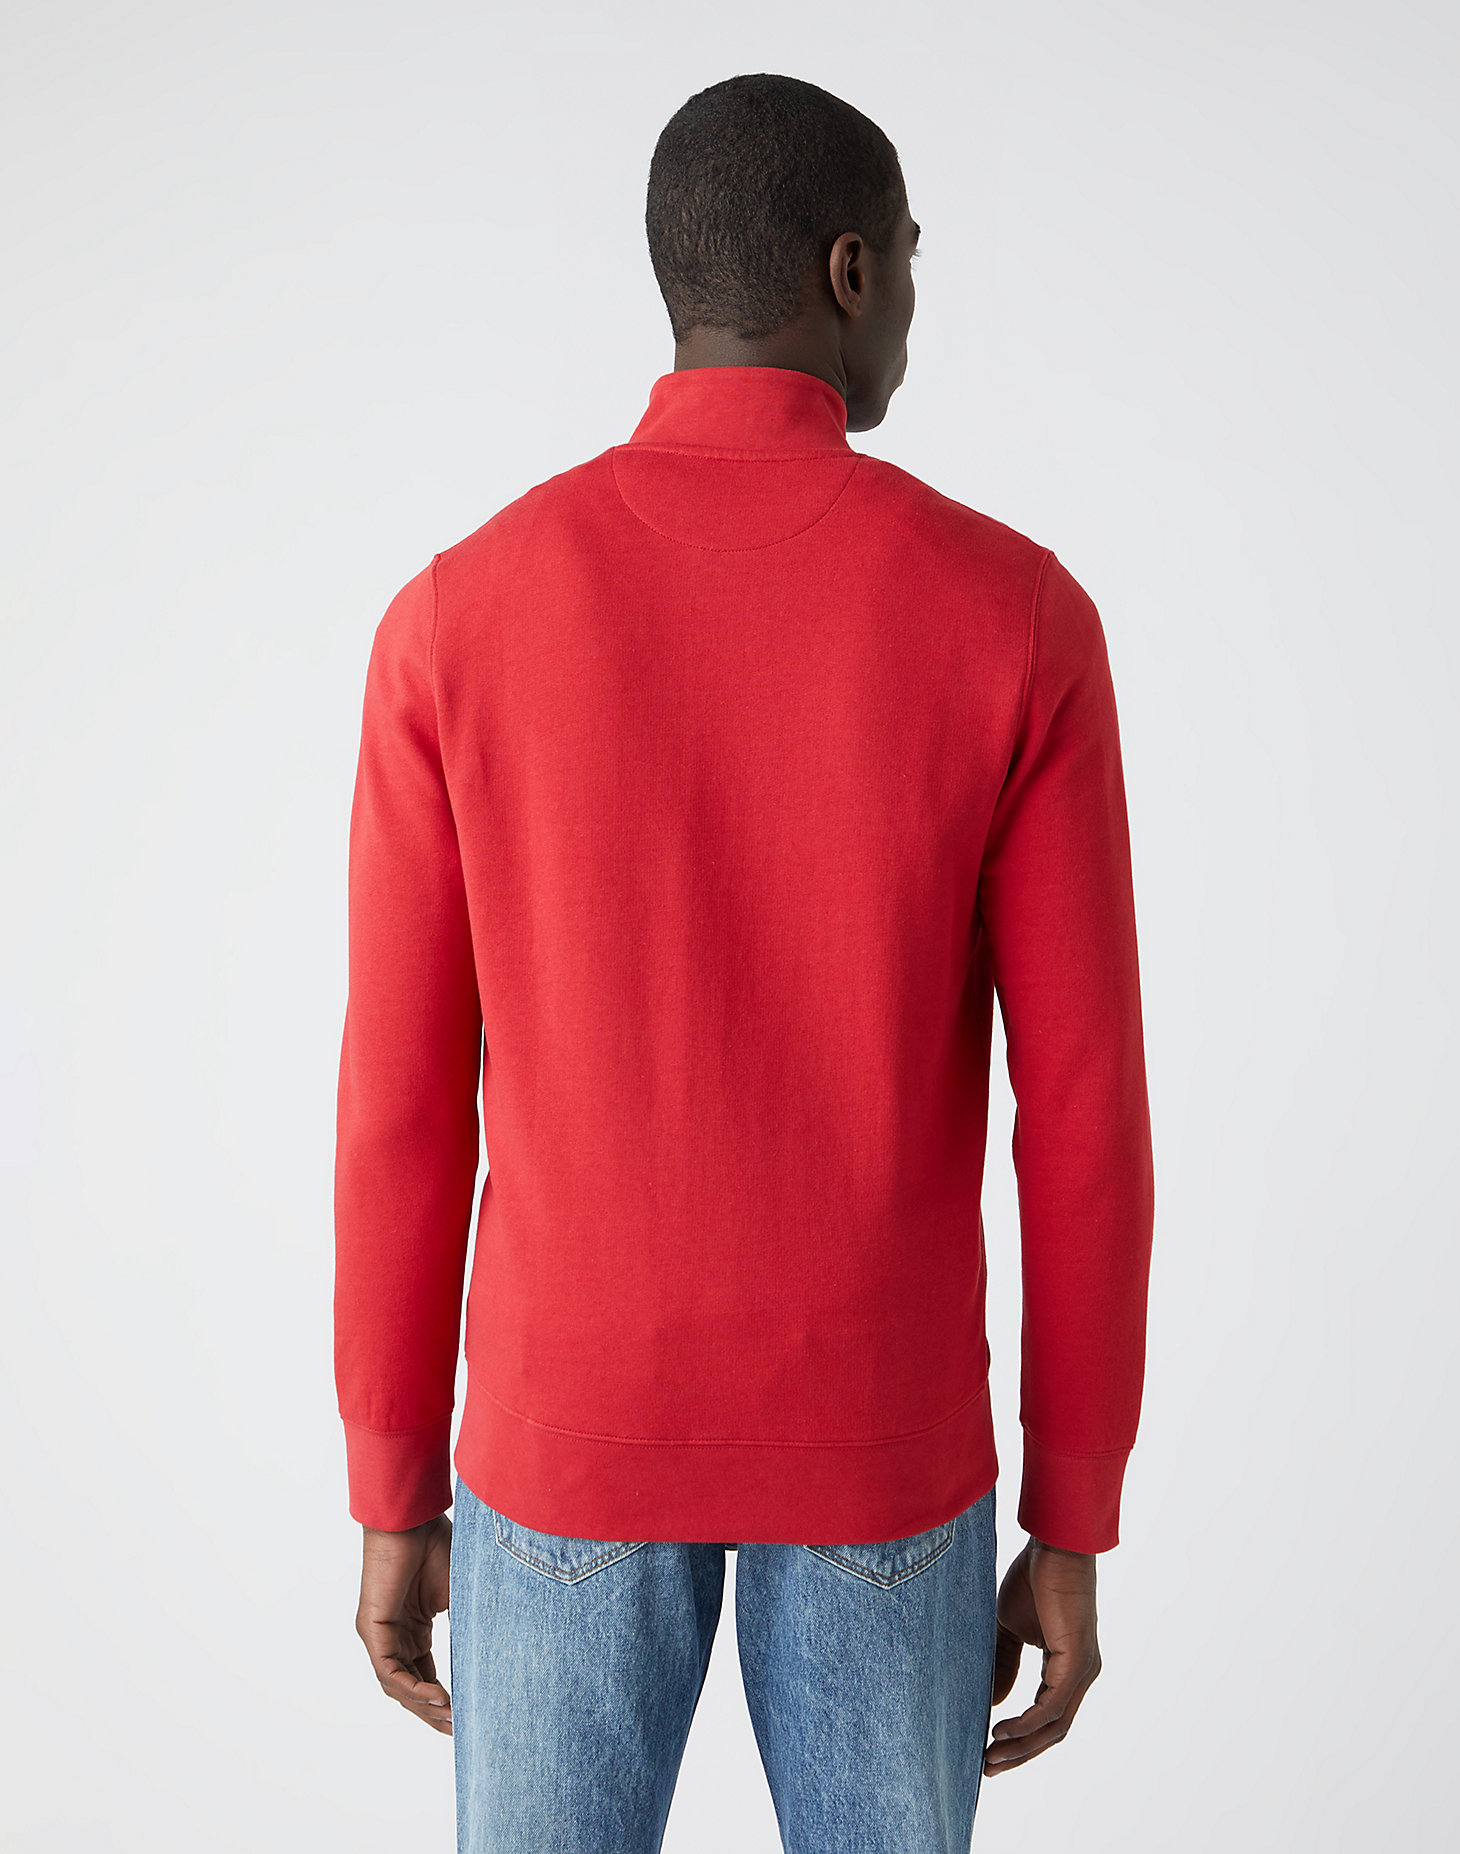 Funnel Neck Zip Sweatshirt in Red alternative view 2